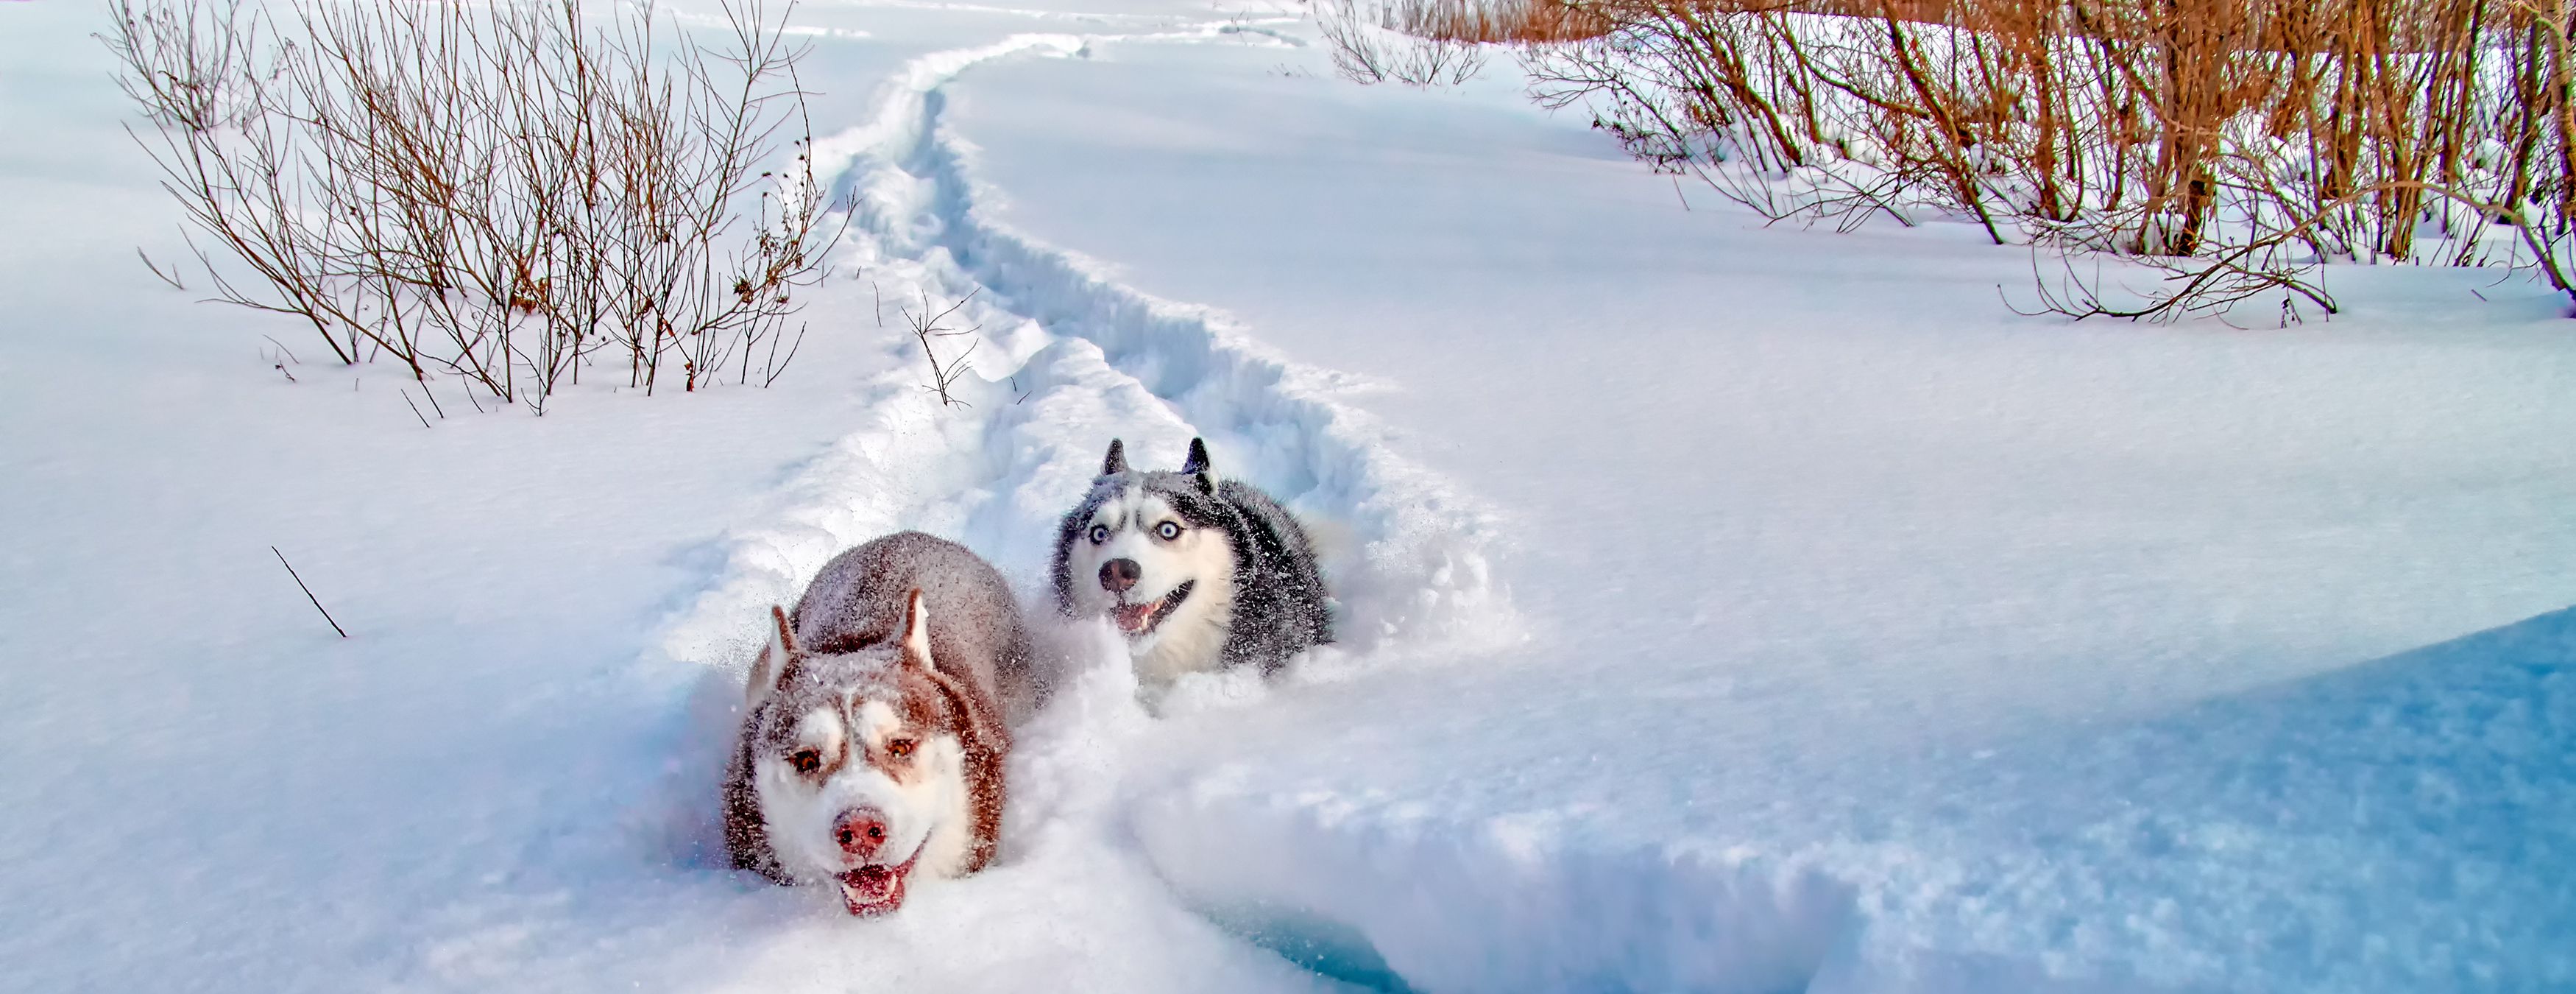 2 Huskies running in snow